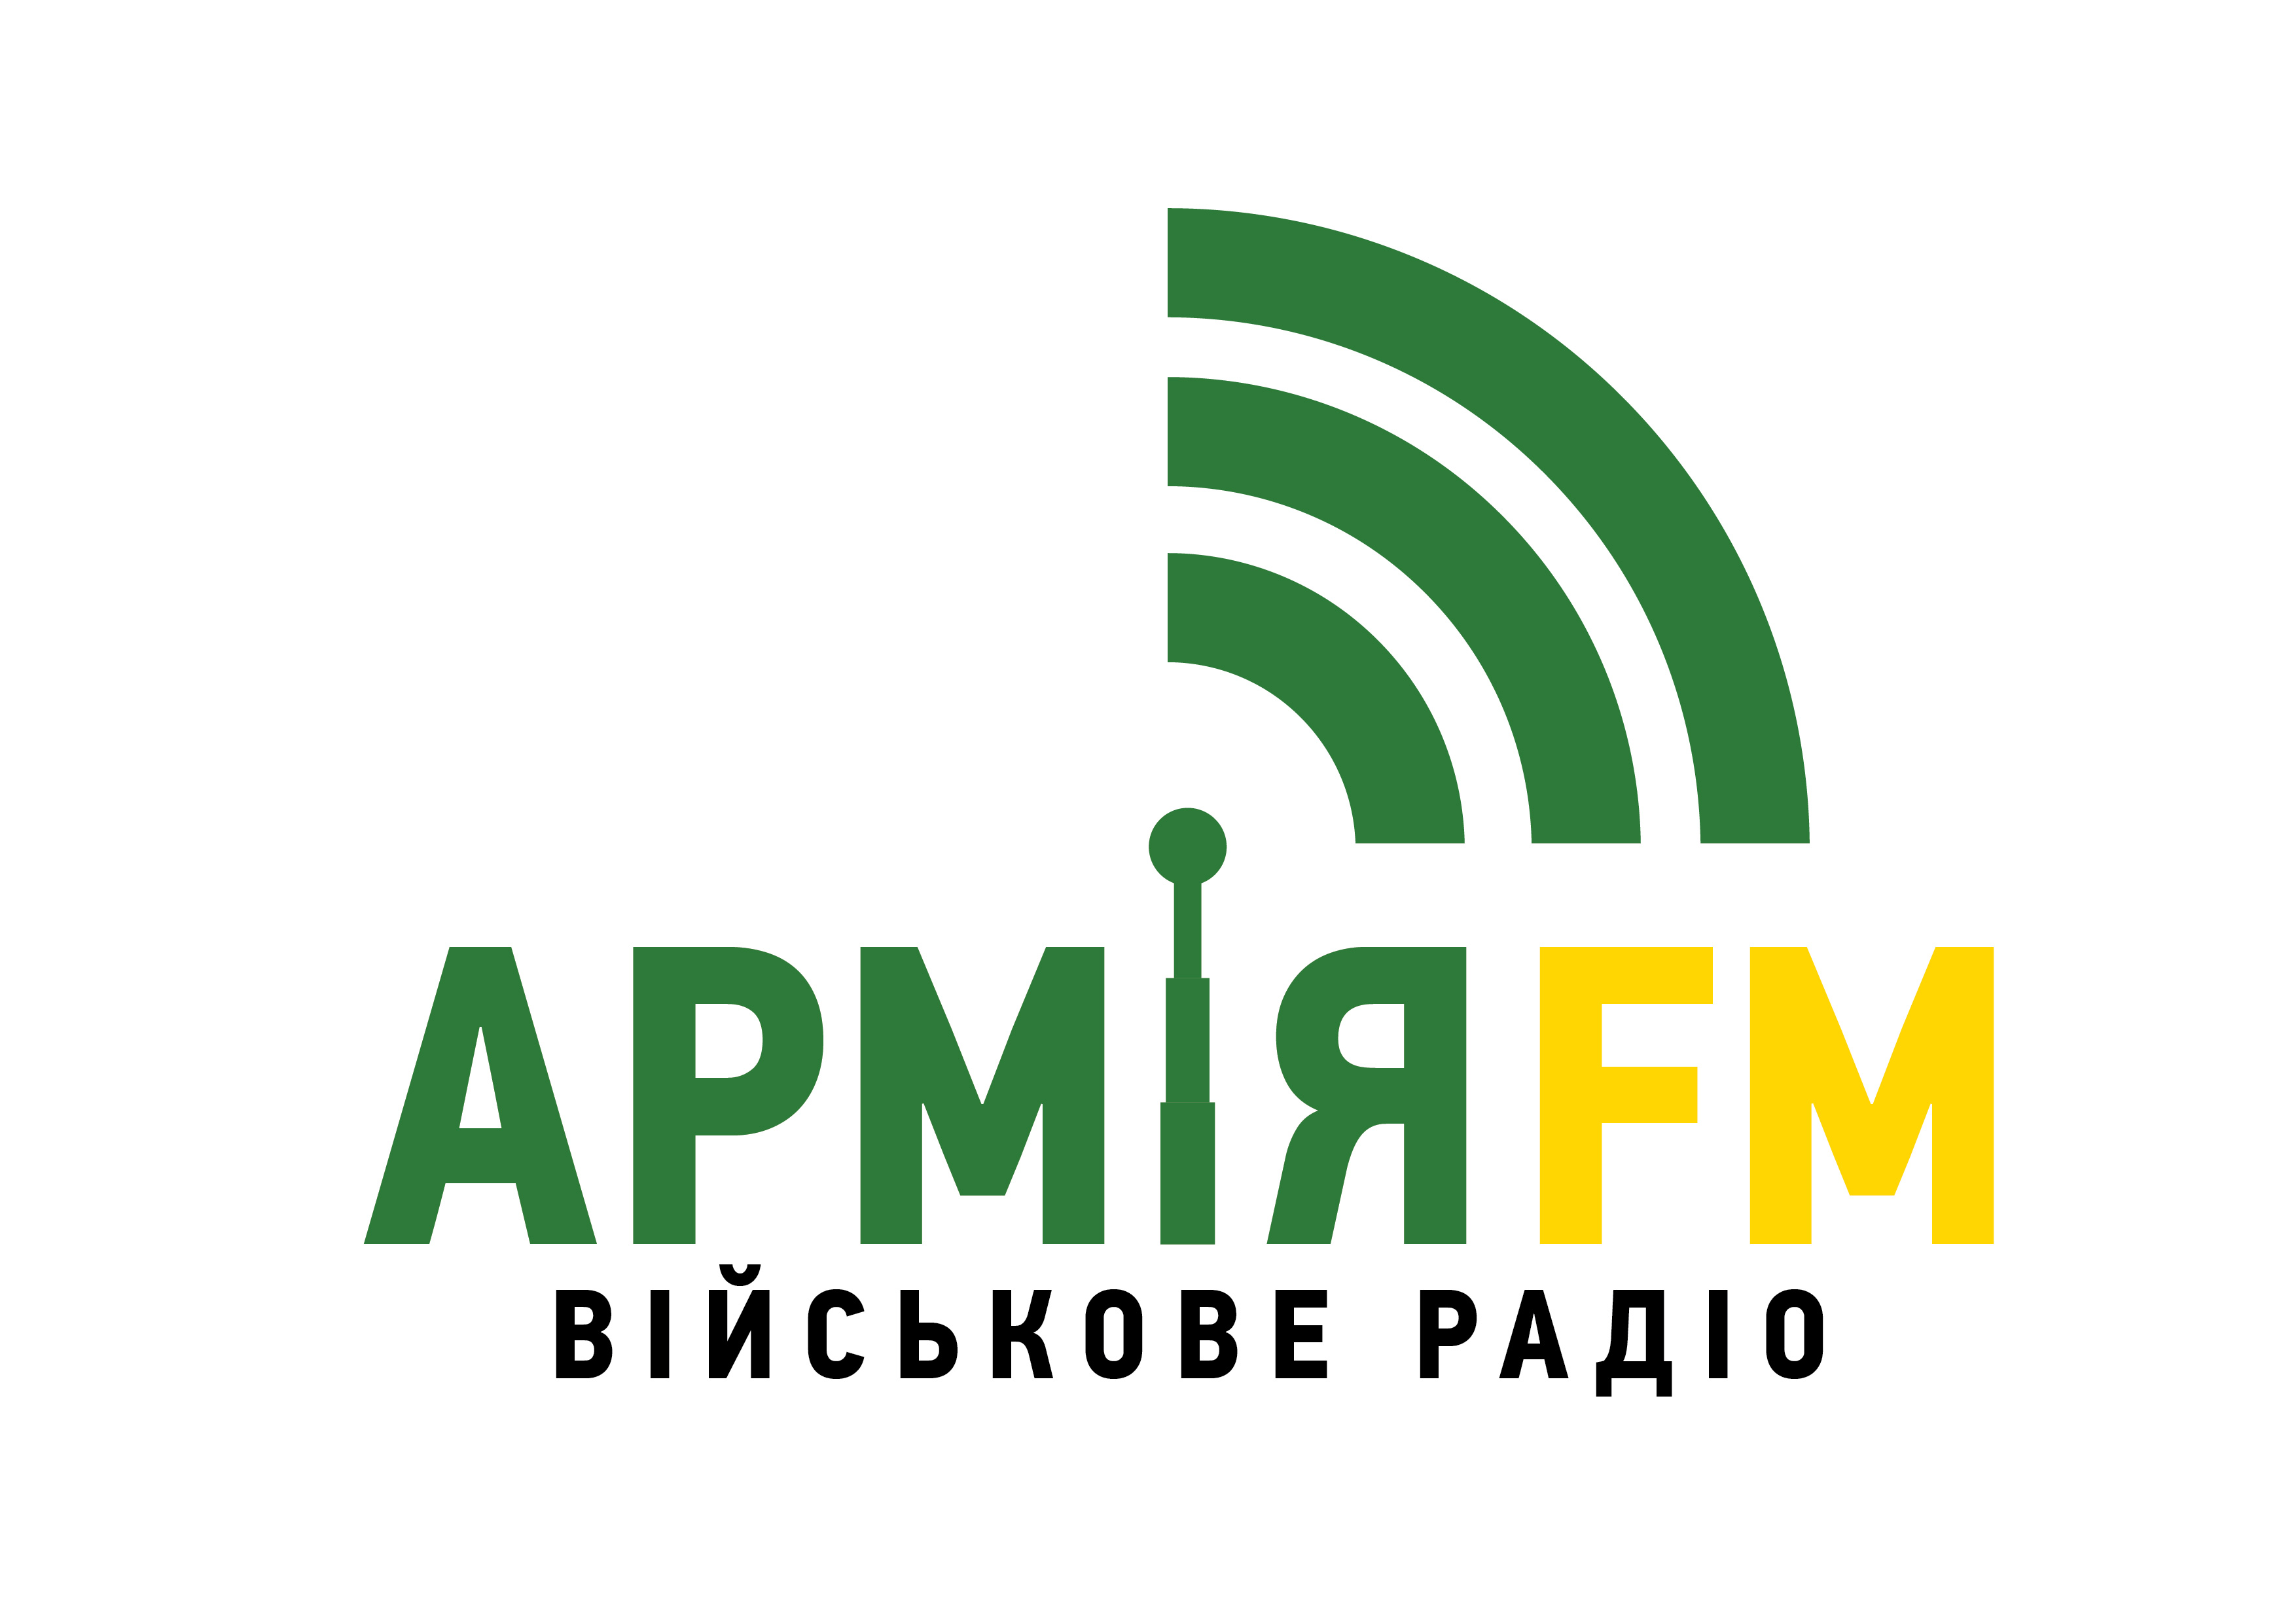 «Армія ФМ» виграла три ФМ-частоти в Києві, Житомирі та Вінниці